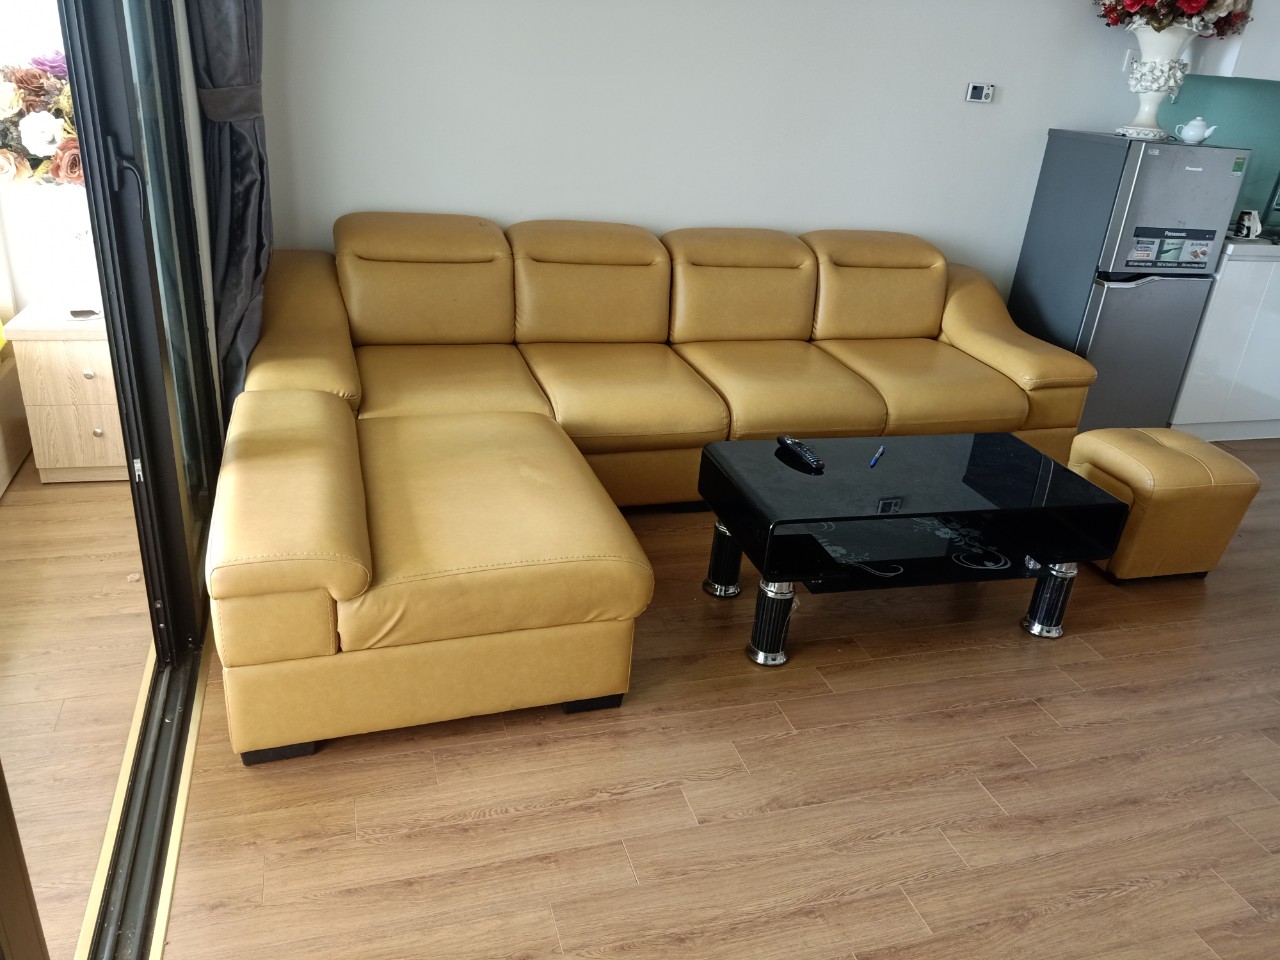 Dịch vụ bọc ghế tại nhà của Sofavinaco vượt xa dịch vụ bọc ghế sofa thông thường tại TPHCM